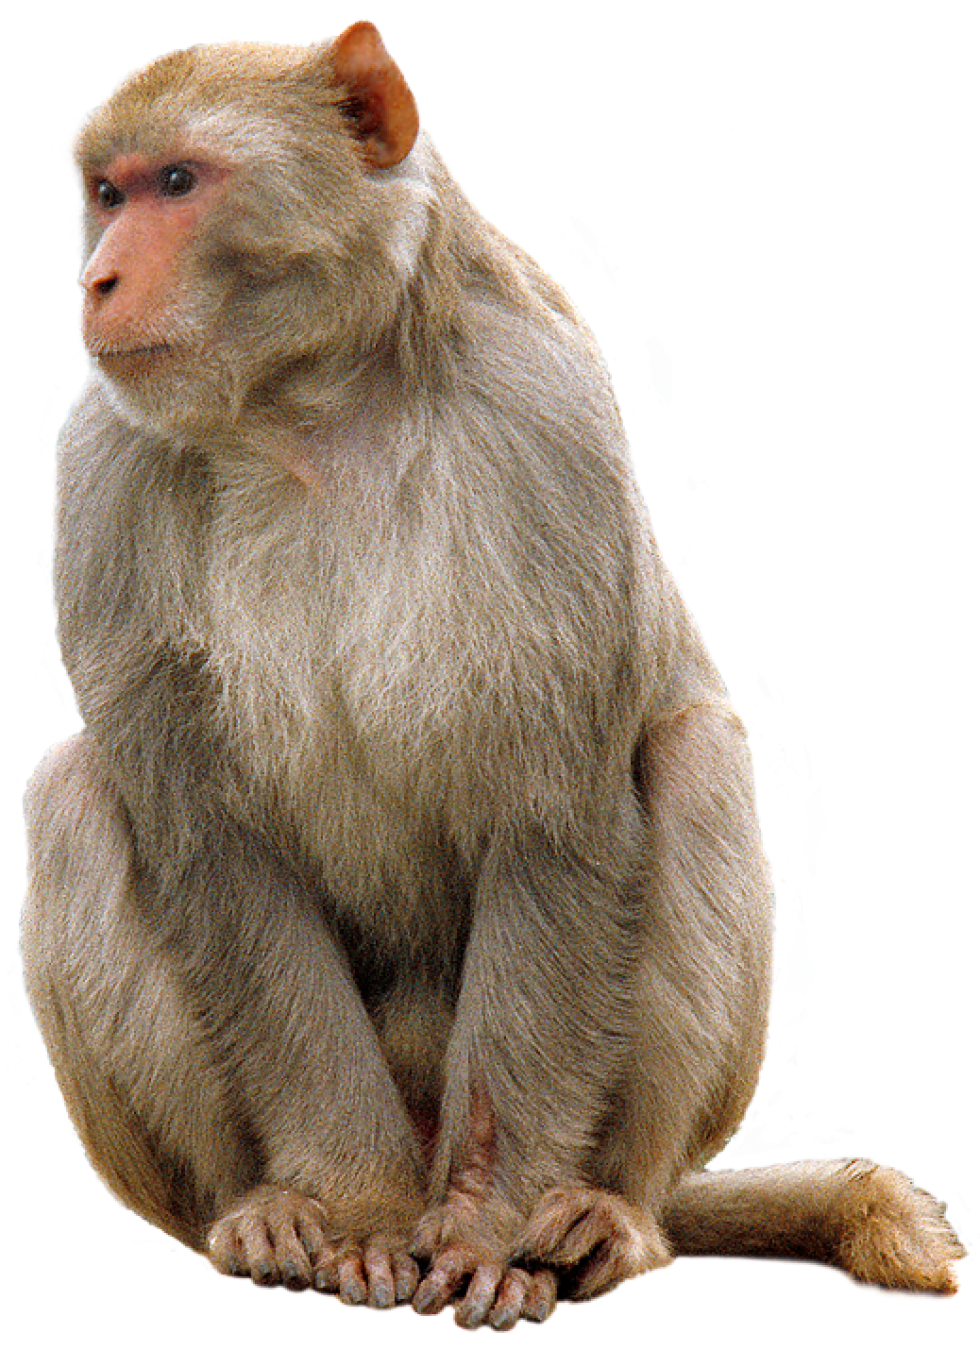 Monkey transparent image